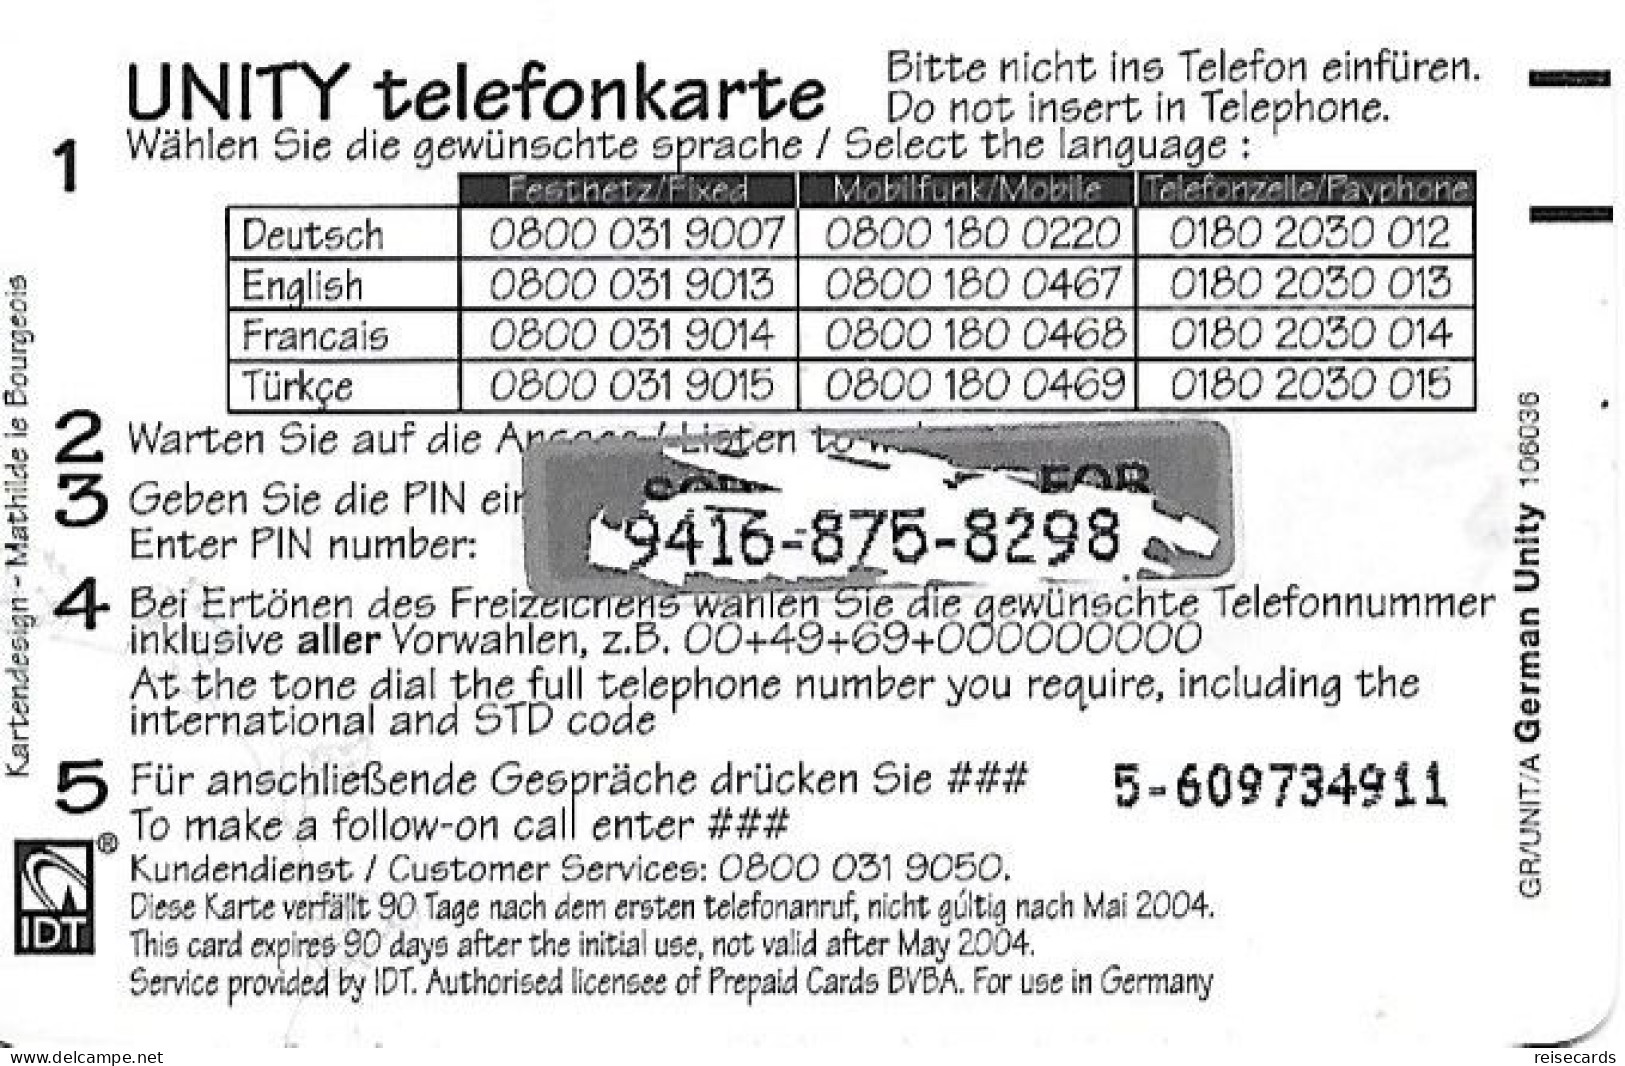 Germany: Prepaid IDT Unity 05.04 - Cellulari, Carte Prepagate E Ricariche